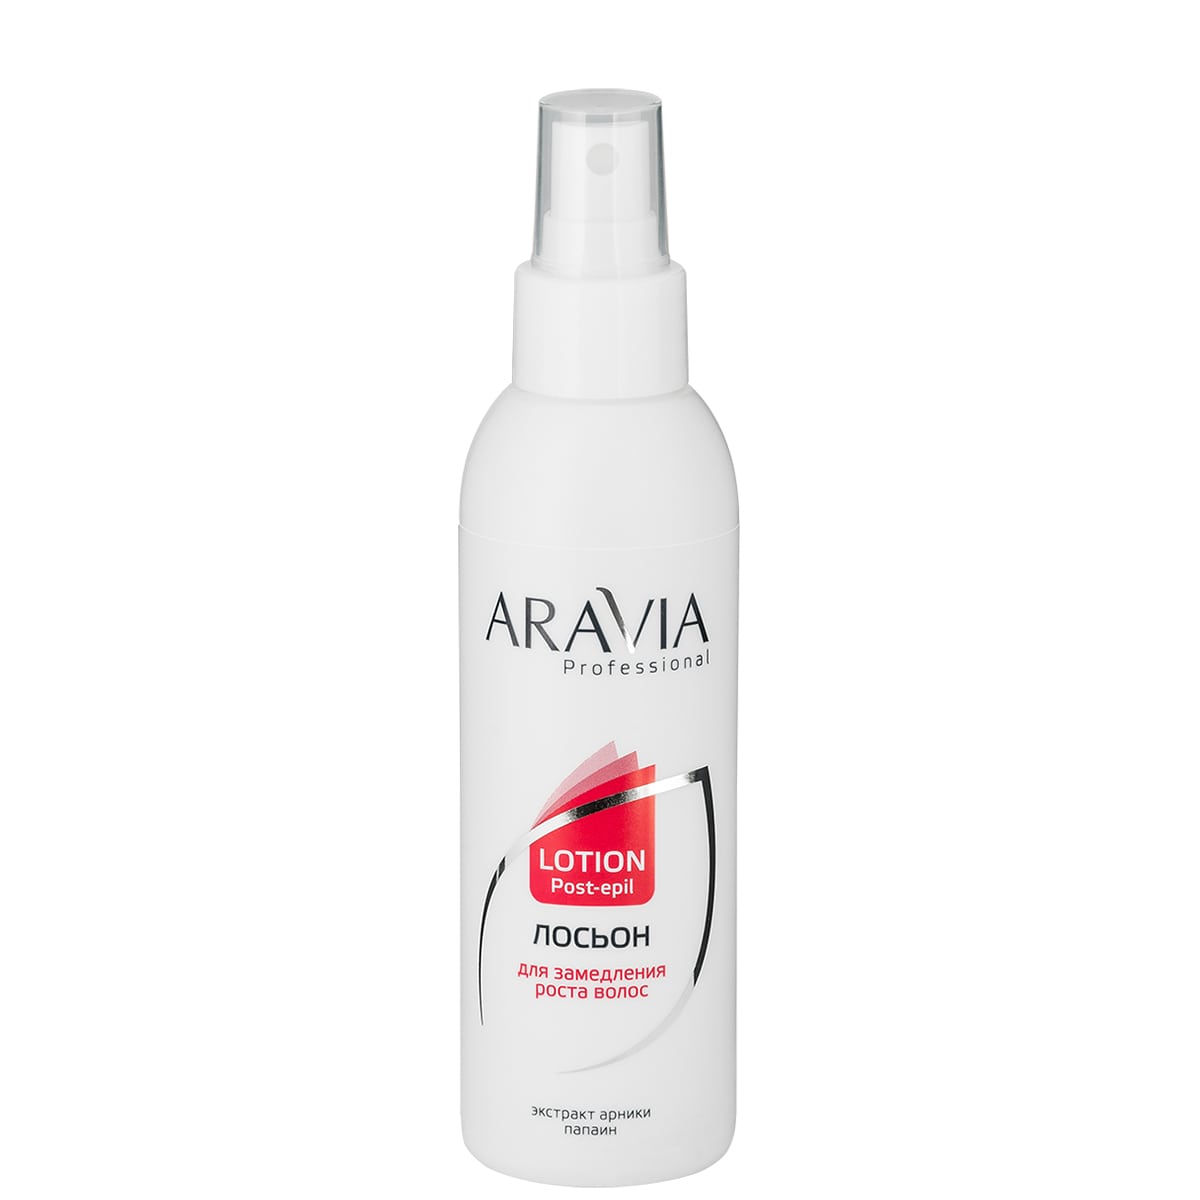 Лосьон для замедления роста волос ARAVIA с экстрактом арники 150гр